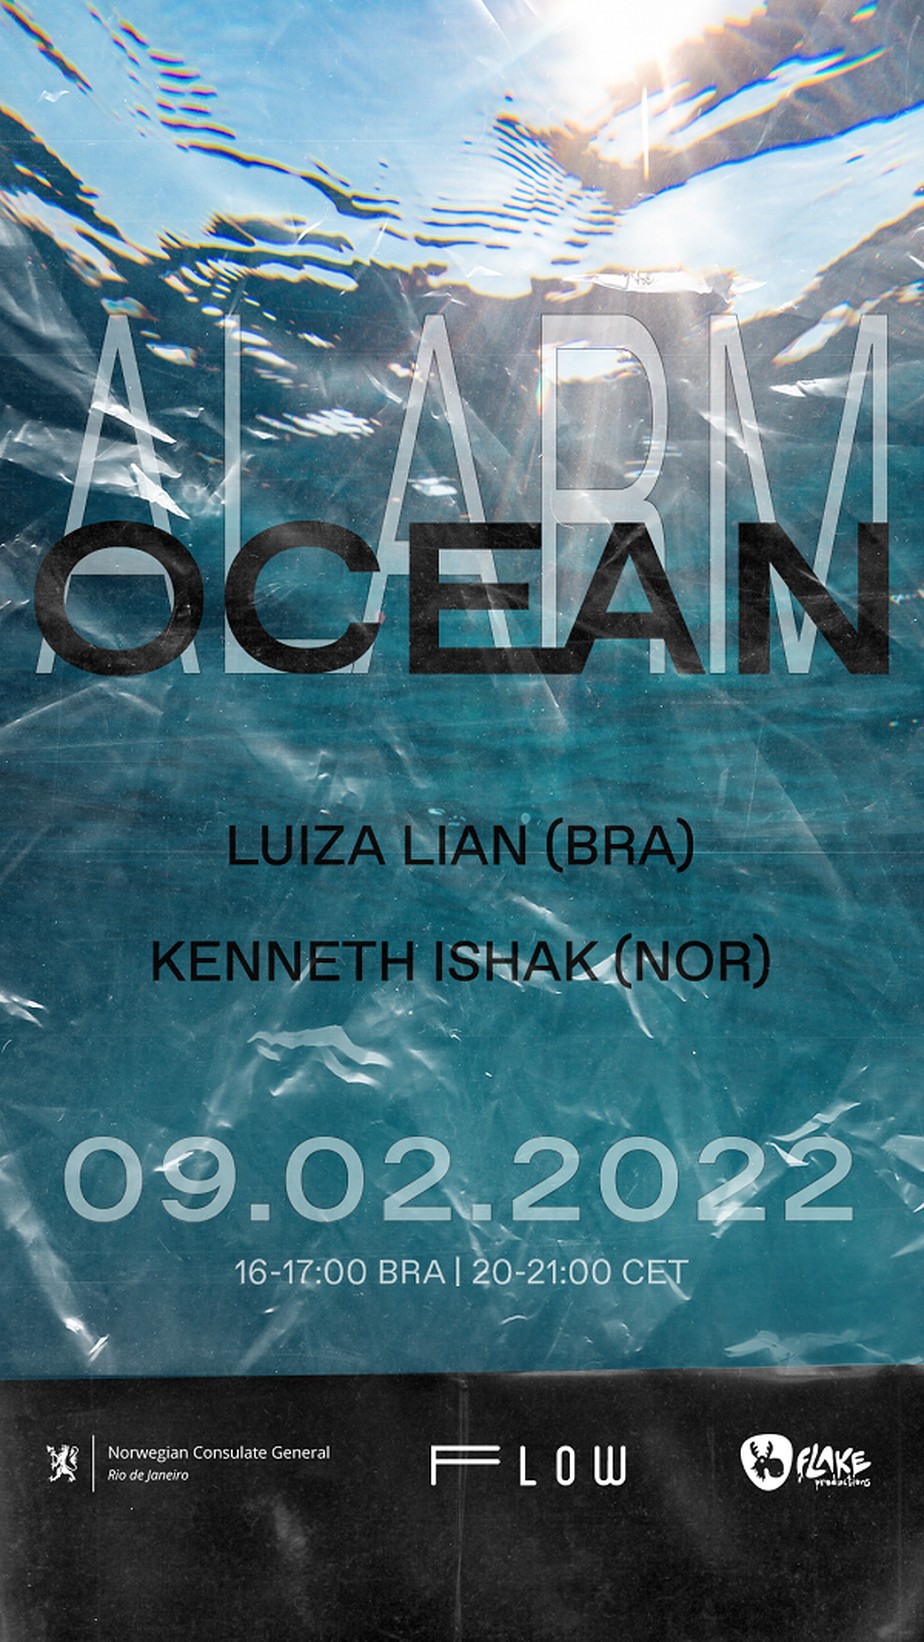 Evento musical traz conscientização sobre a saúde do oceano